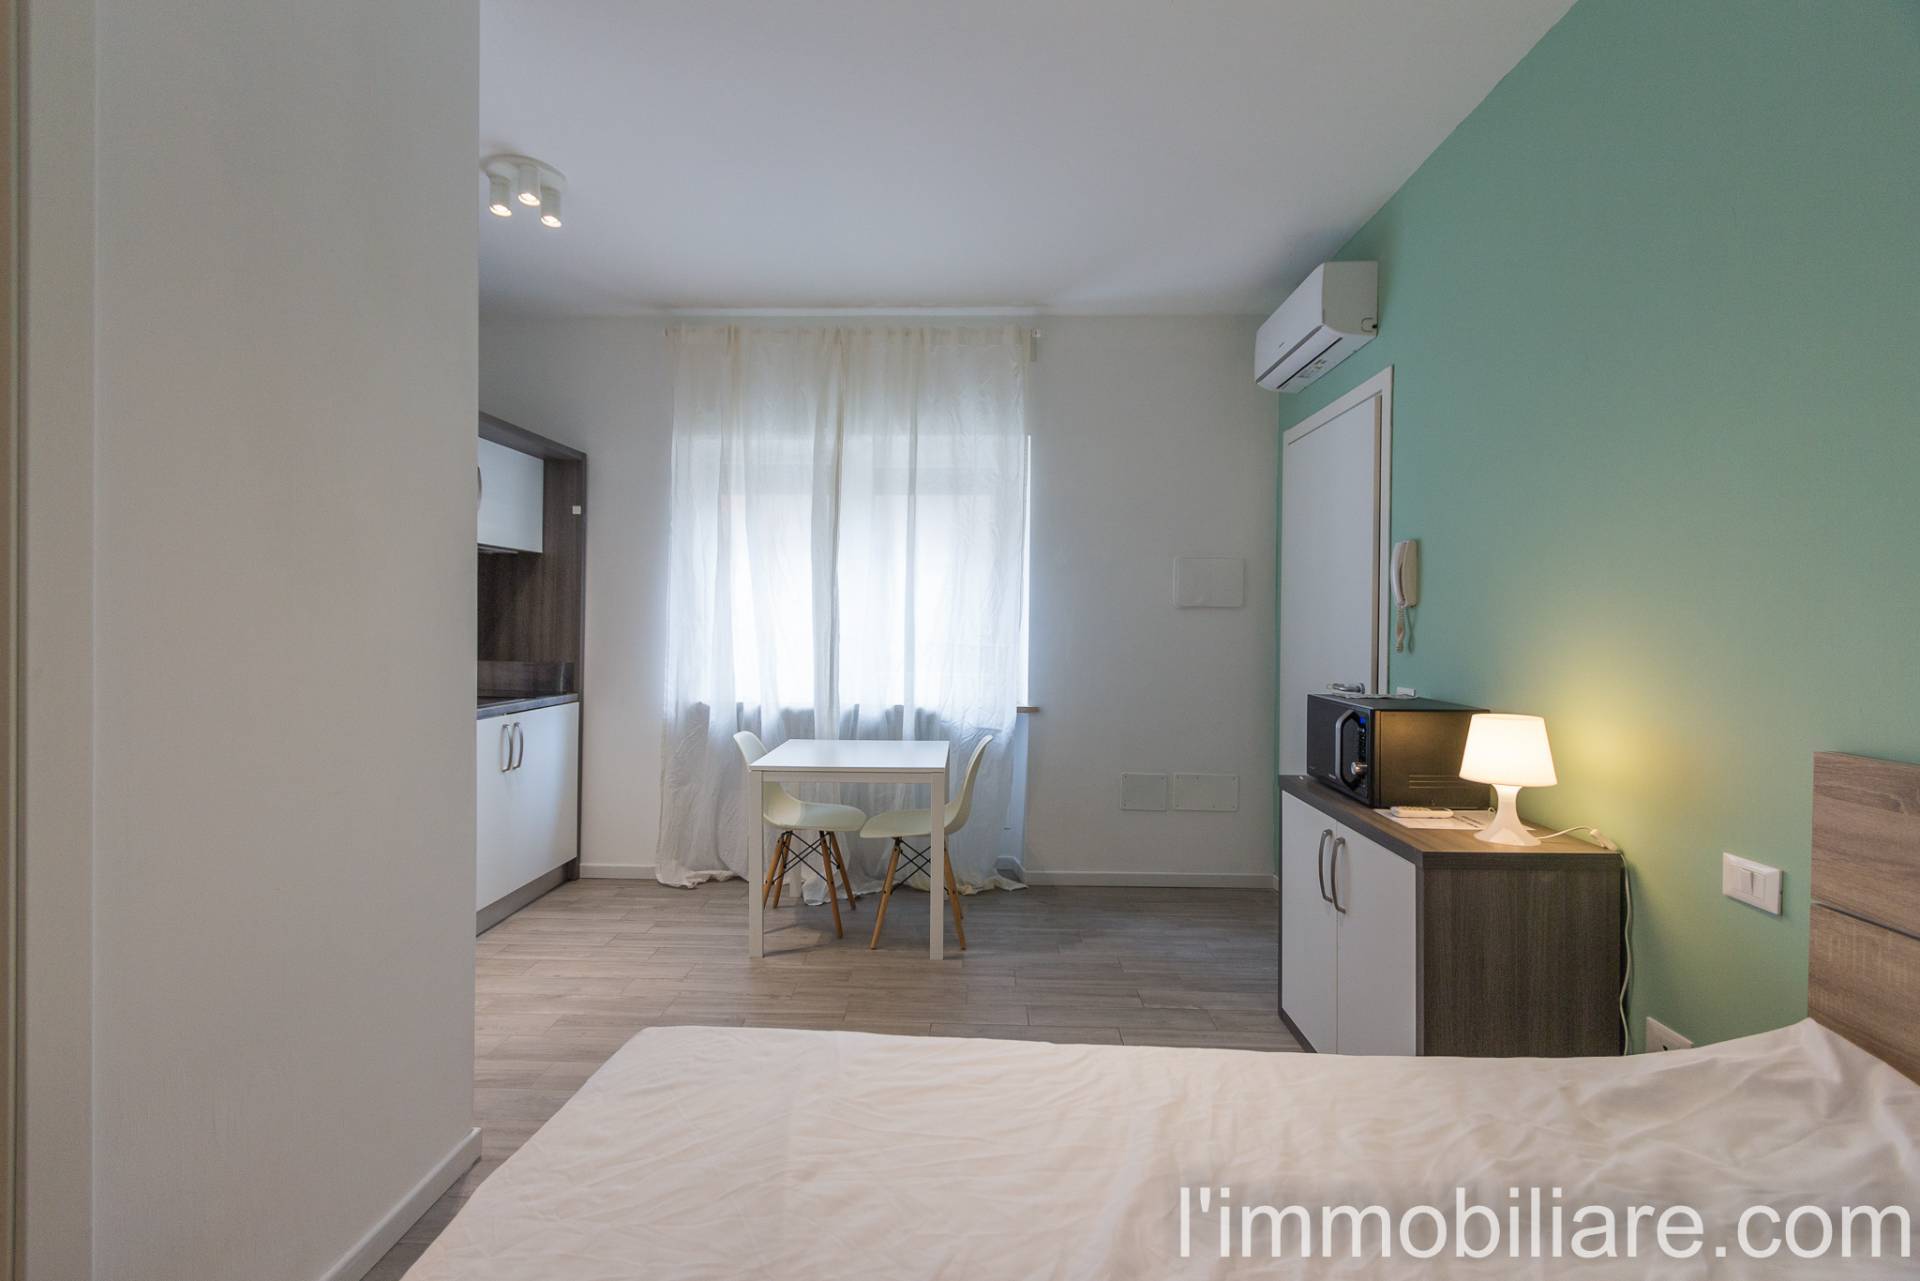 Appartamento in affitto a Verona, 1 locali, zona Zona: 5 . Quinzano - Pindemonte - Ponte Crencano - Valdonega - Avesa , prezzo € 500 | CambioCasa.it